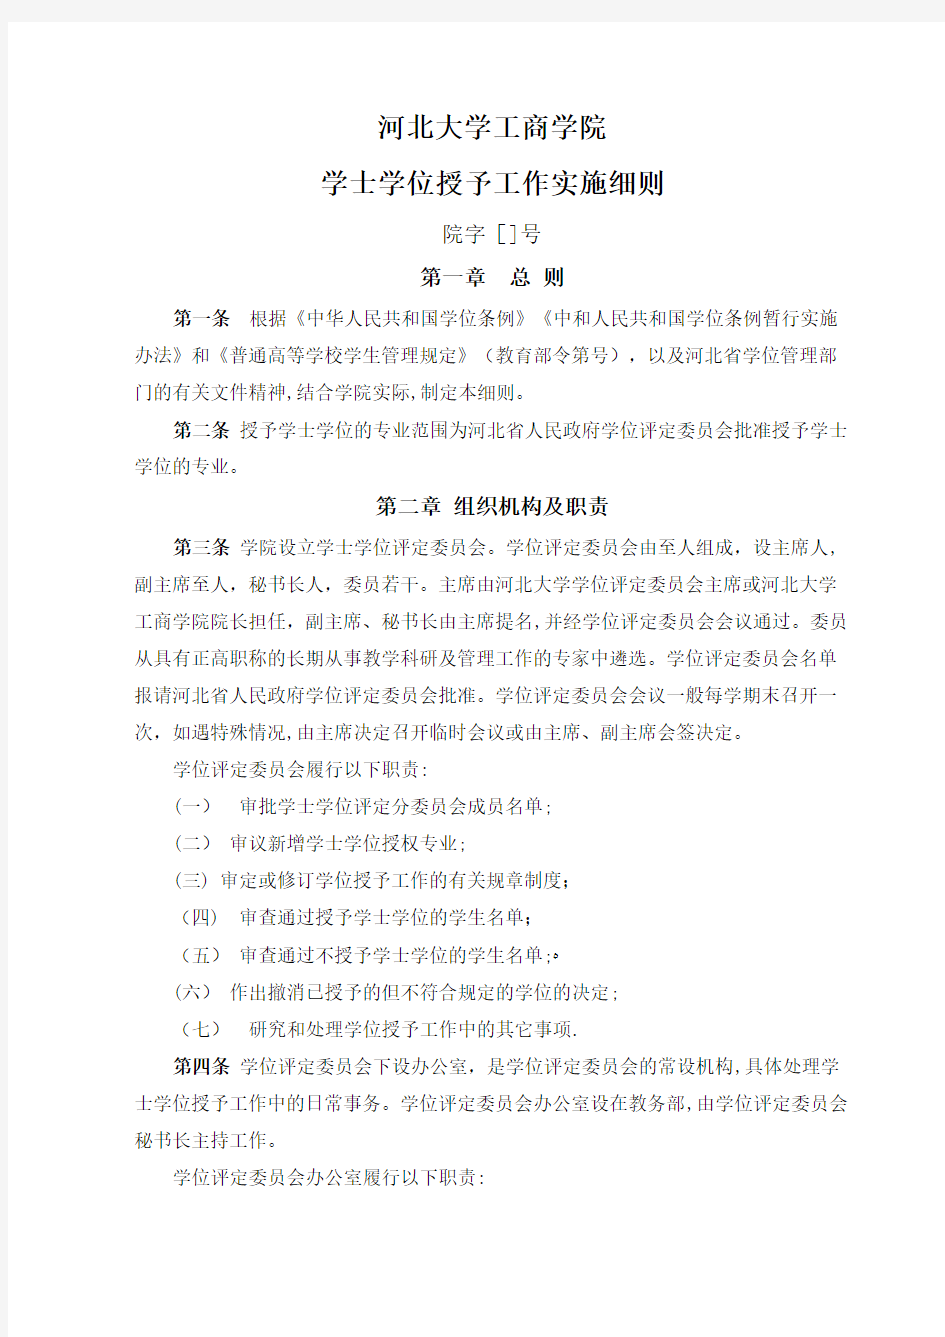 上海交通大学学生校内申诉制度管理规定.doc